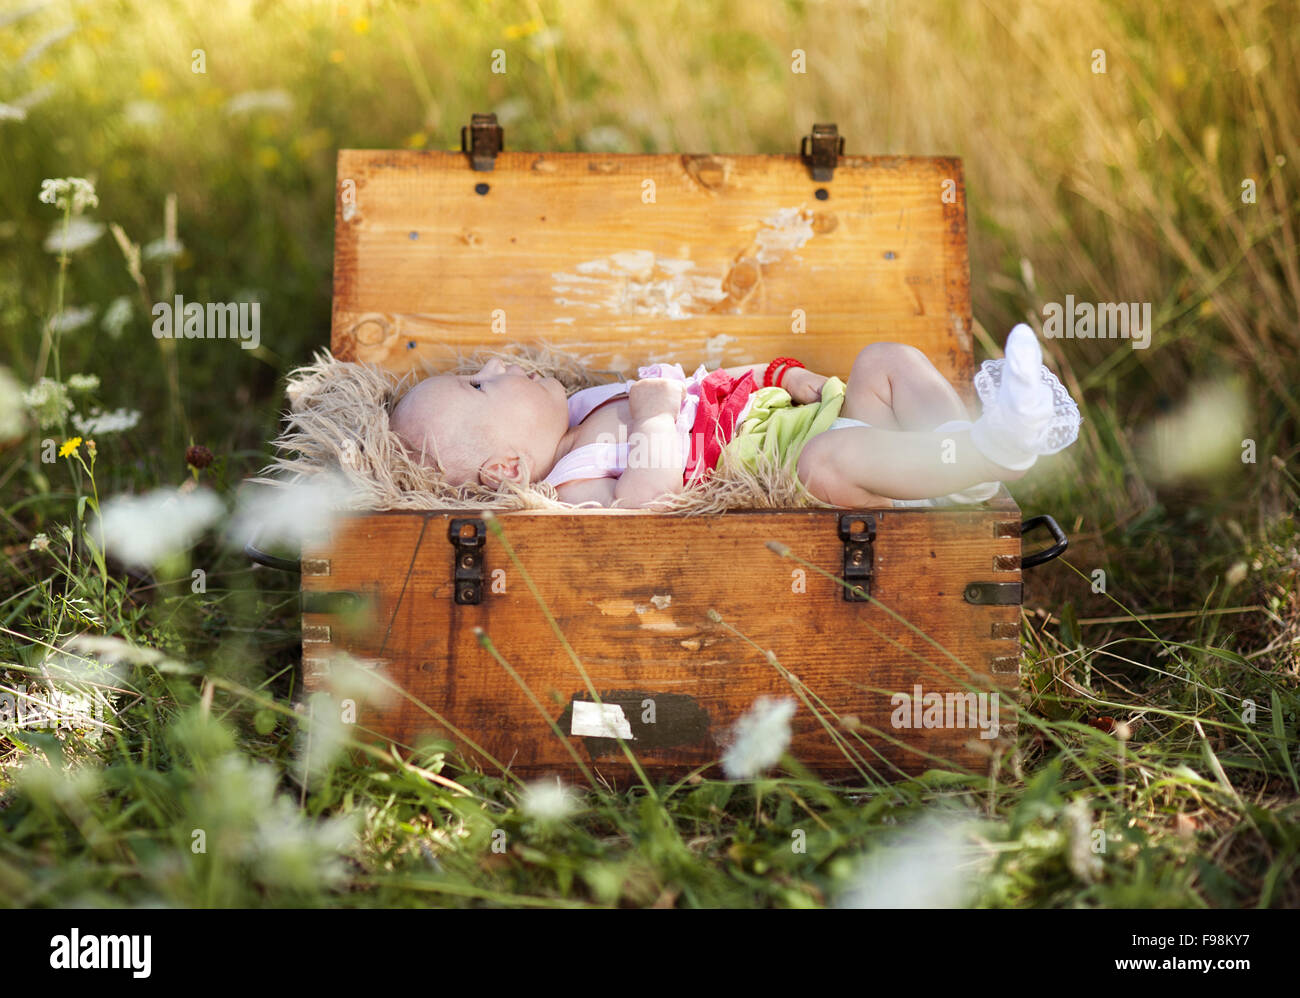 Outdoor ritratto della piccola bambina sdraiato nella vecchia valigia in legno Foto Stock